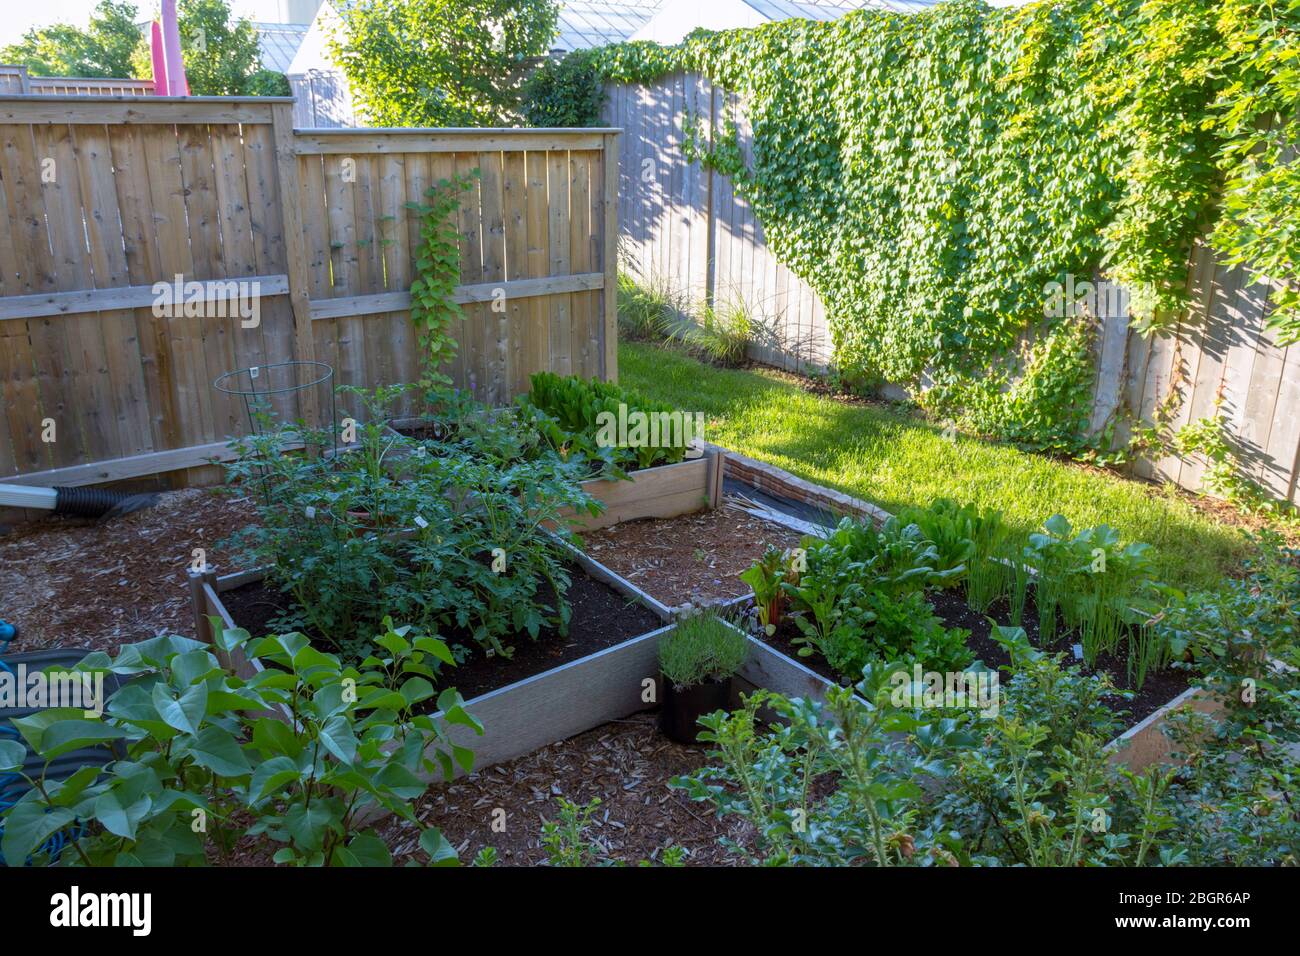 Parte del movimento del vostro proprio alimento di crescita, questo giardino di verdure del cortile contiene grandi letti sollevati per la coltivazione delle verdure e delle erbe durante l'estate. Foto Stock